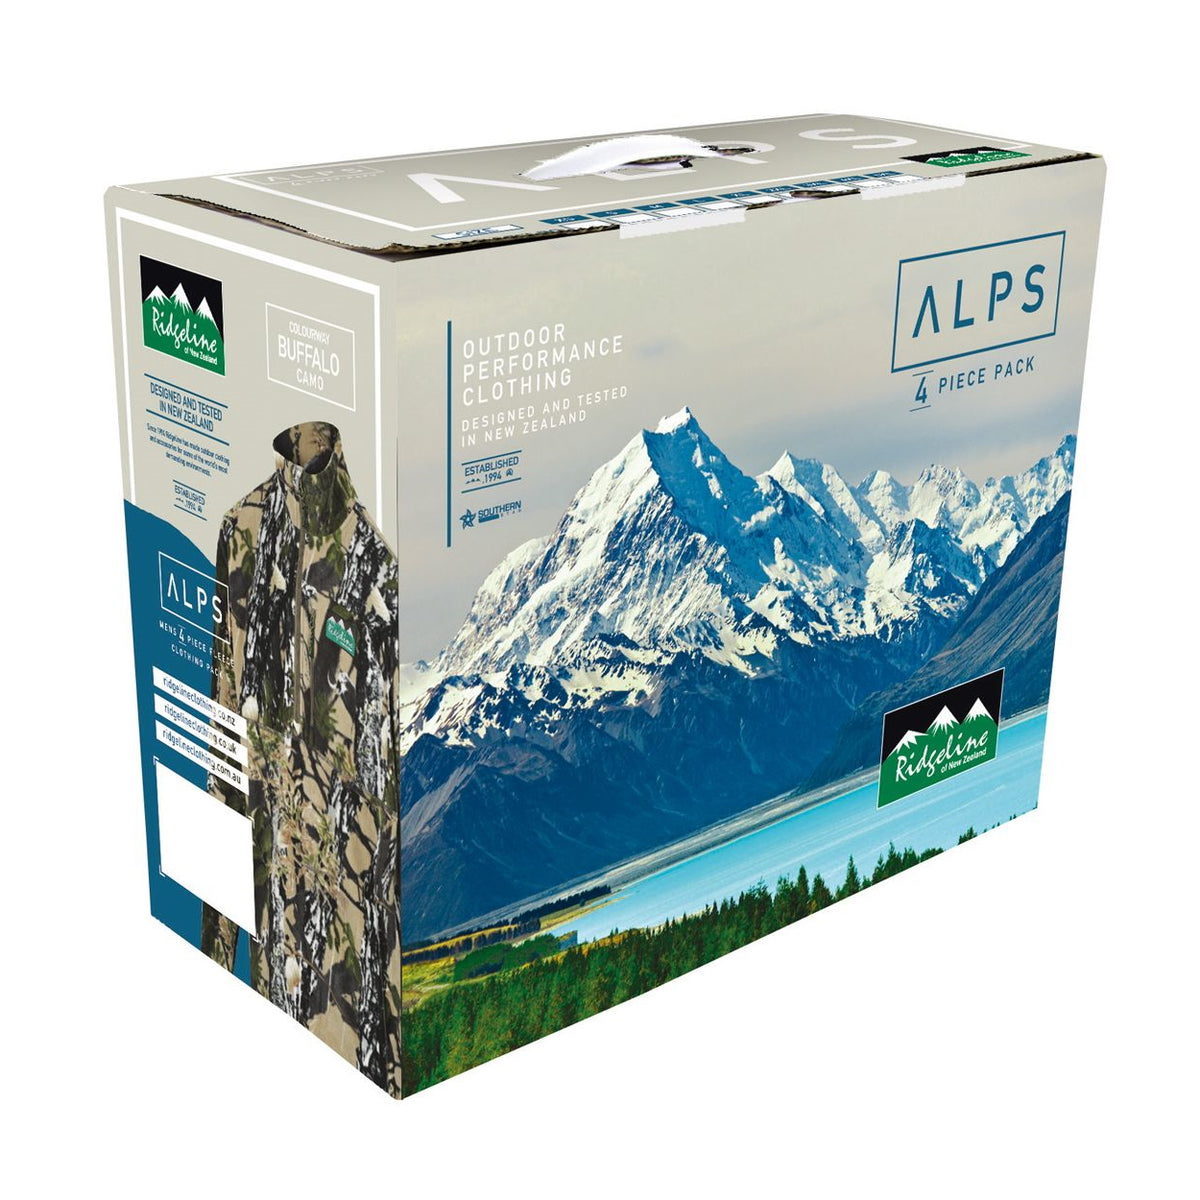 Ridgeline Alps Fleece Pack in Box